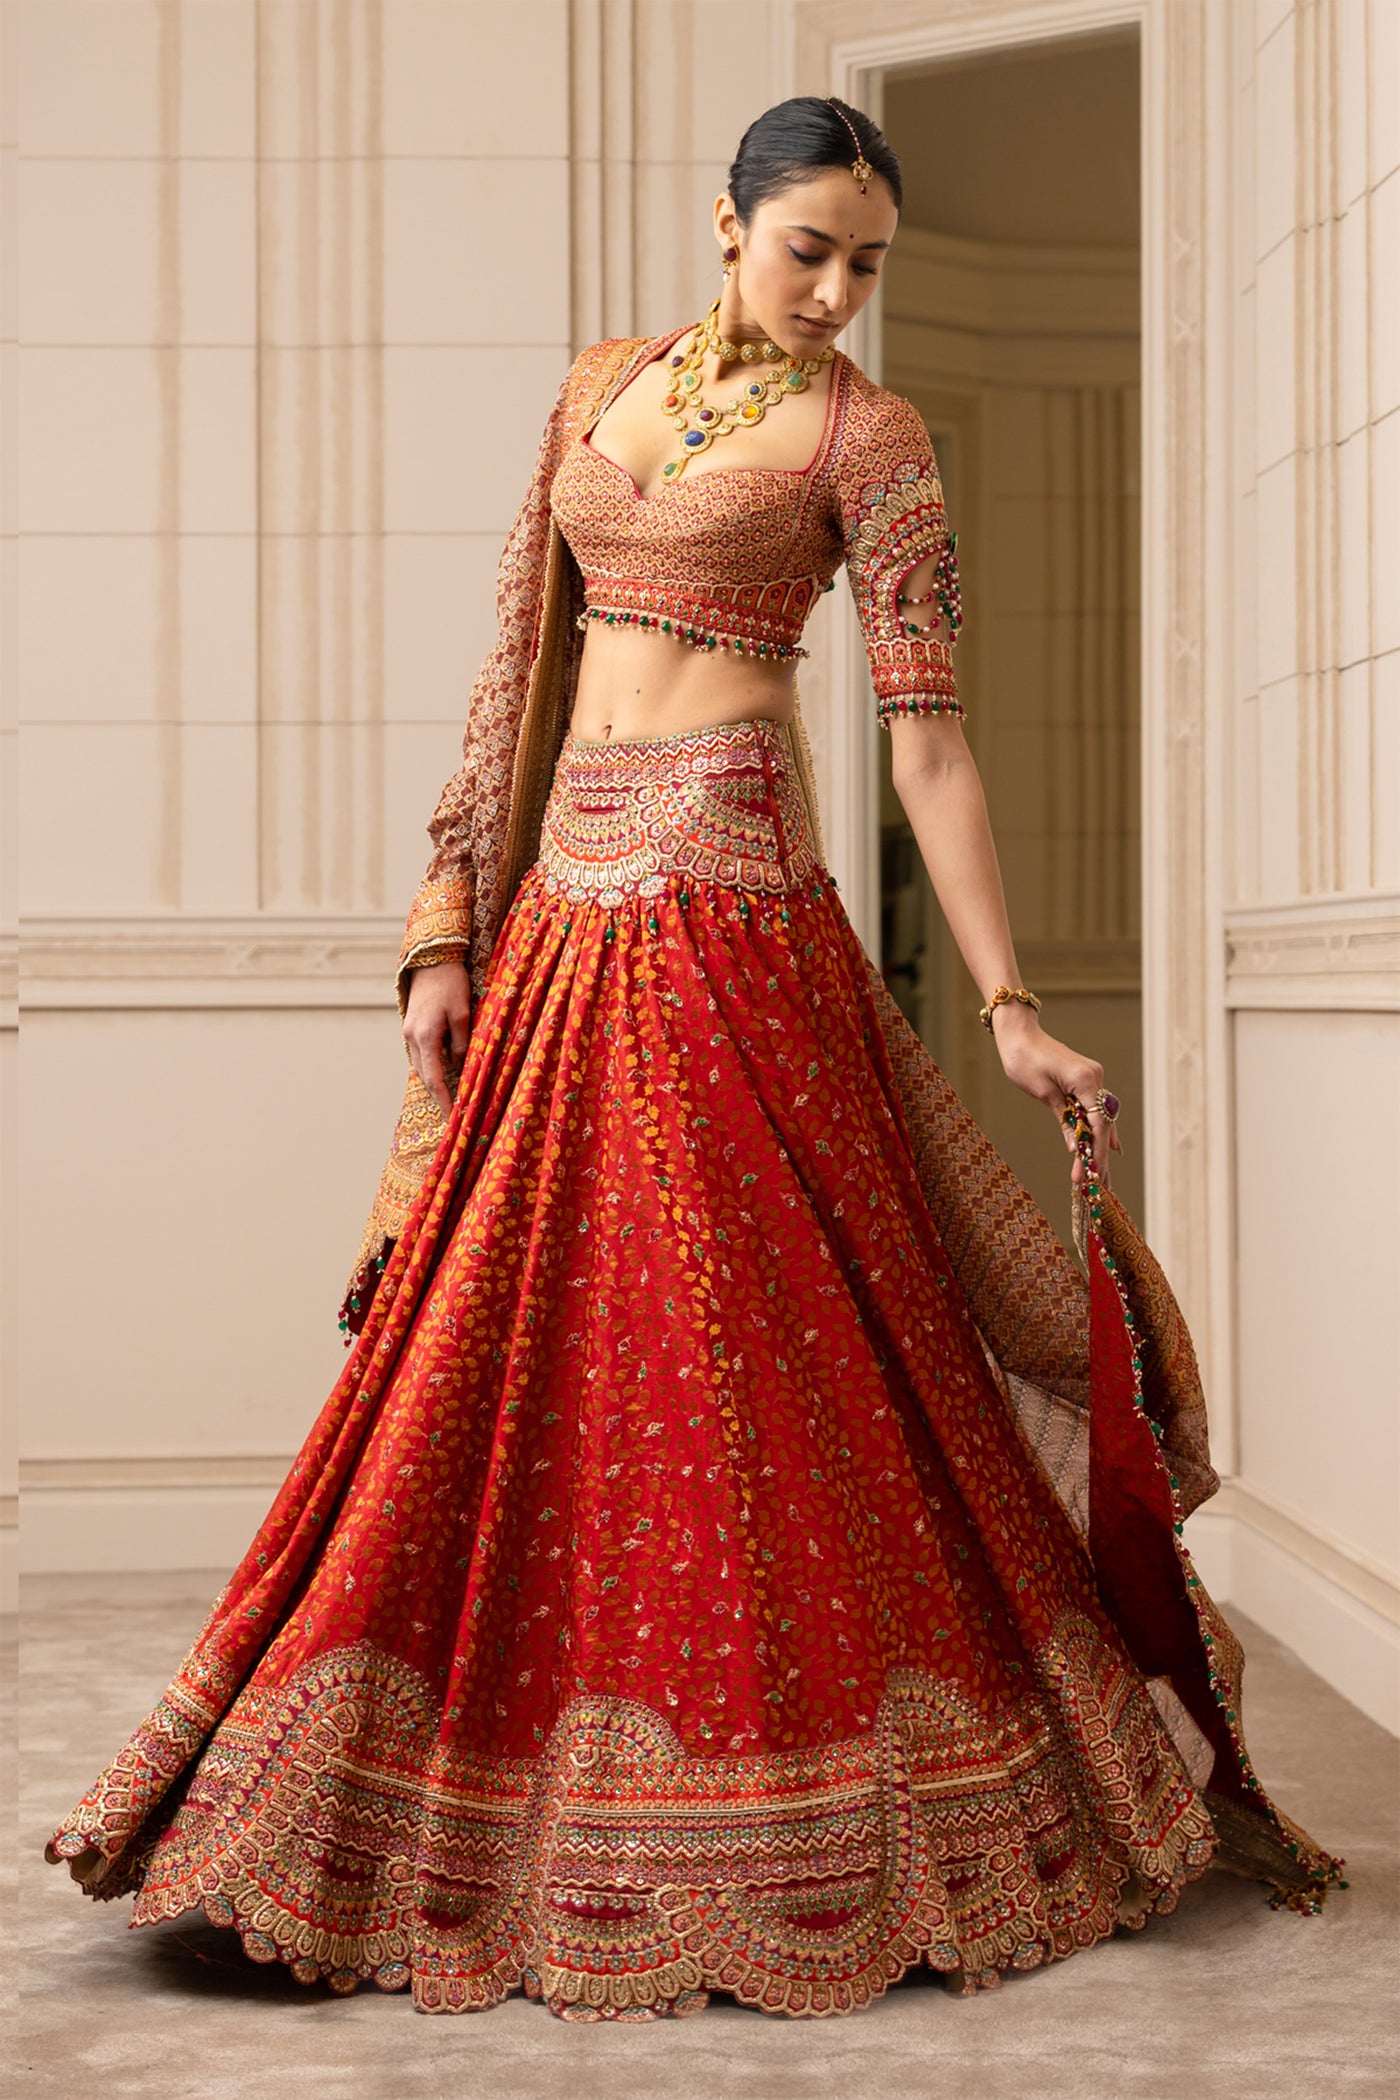 Tarun tahiliani Brocade Lehenga With Matching Blouse red online shopping melange singapore indian designer wear bridal wedding